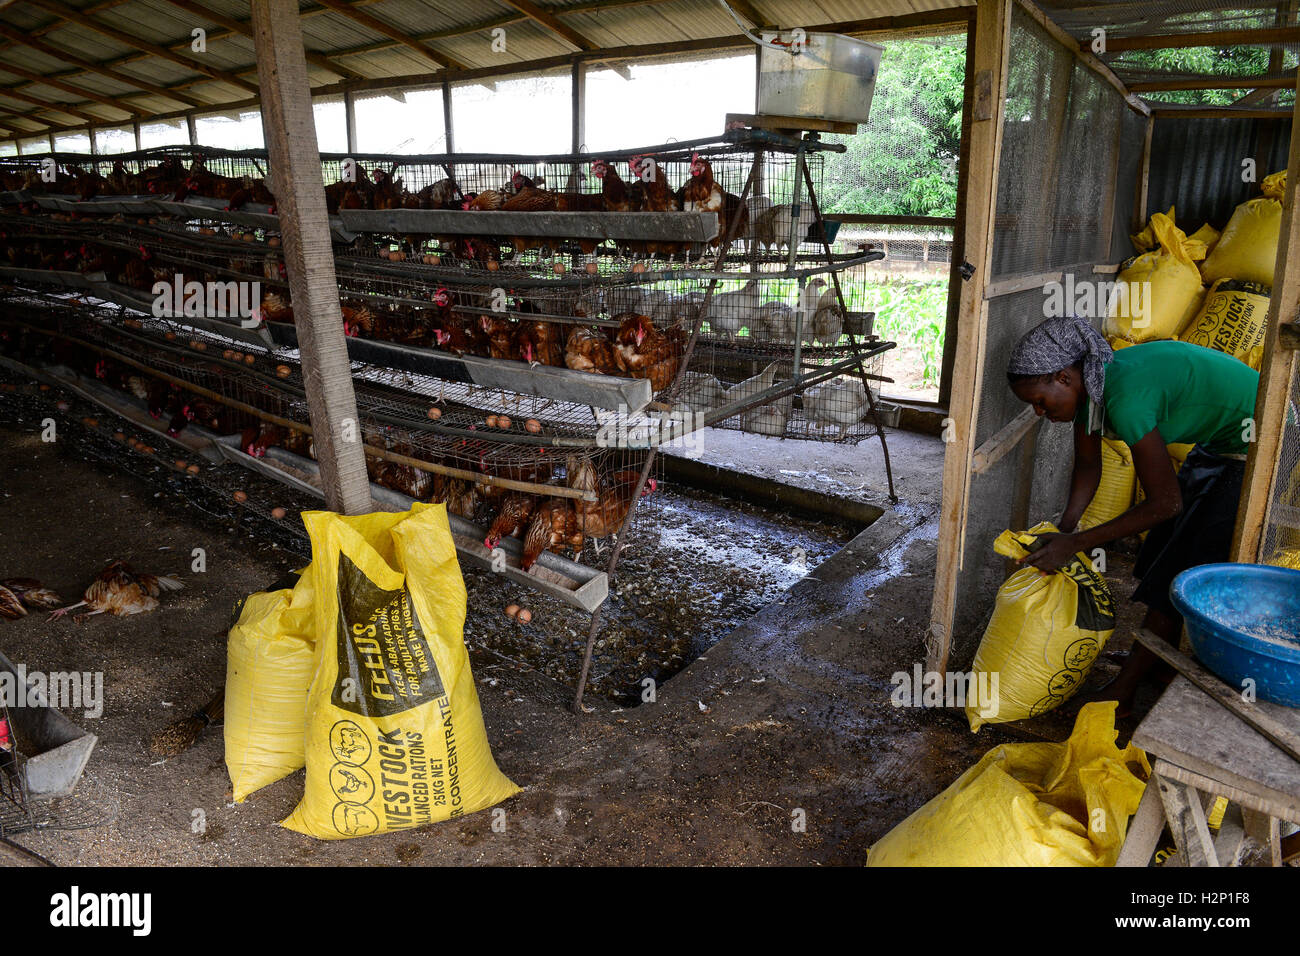 NIGERIA, Oyo State, Ibadan, village Ilora, egg layer hen keeping in cages, fodder for feeding / Eierproduktion, Legehennenhaltung in Kaefigen, Tierfutter Stock Photo